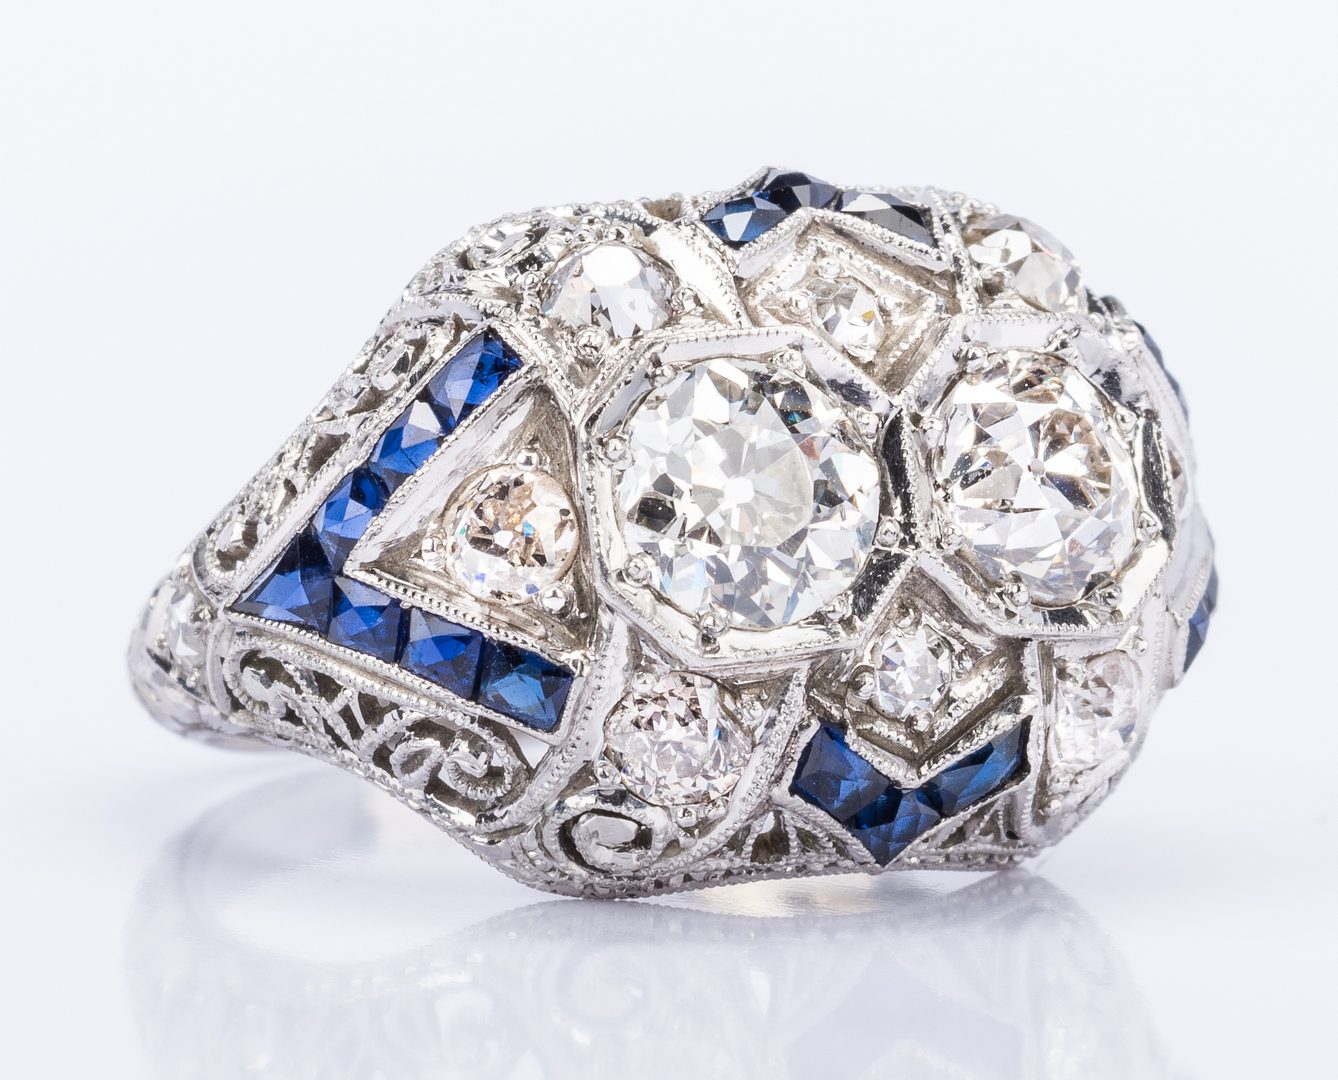 Lot 42: Art Deco 2 Diamond Platinum Ring